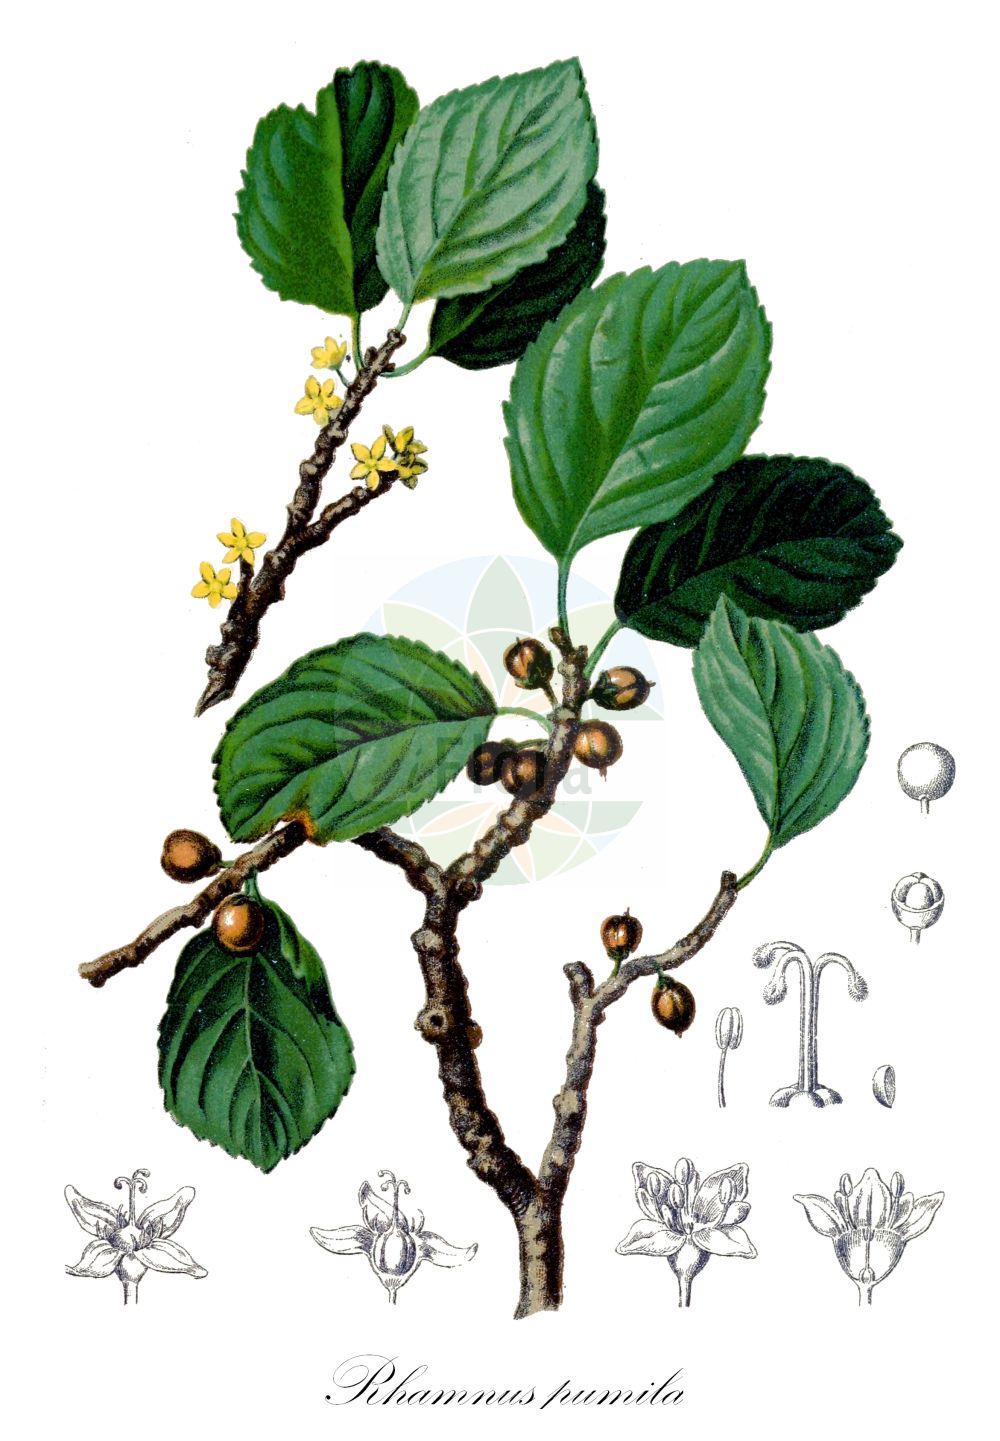 Historische Abbildung von Rhamnus pumila (Zwerg-Kreuzdorn - Dwarf Buckthorn). Das Bild zeigt Blatt, Bluete, Frucht und Same. ---- Historical Drawing of Rhamnus pumila (Zwerg-Kreuzdorn - Dwarf Buckthorn). The image is showing leaf, flower, fruit and seed.(Rhamnus pumila,Zwerg-Kreuzdorn,Dwarf Buckthorn,Oreoherzogia legionensis,Oreoherzogia pumila,Rhamnus pumila,Rhamnus pusilla,Zwerg-Kreuzdorn,Dwarf Buckthorn,Rhamnus,Kreuzdorn,Buckthorn,Rhamnaceae,Kreuzdorngewächse,Buckthorn family,Blatt,Bluete,Frucht,Same,leaf,flower,fruit,seed,Hartinger & von Dalla Torre (1806f))